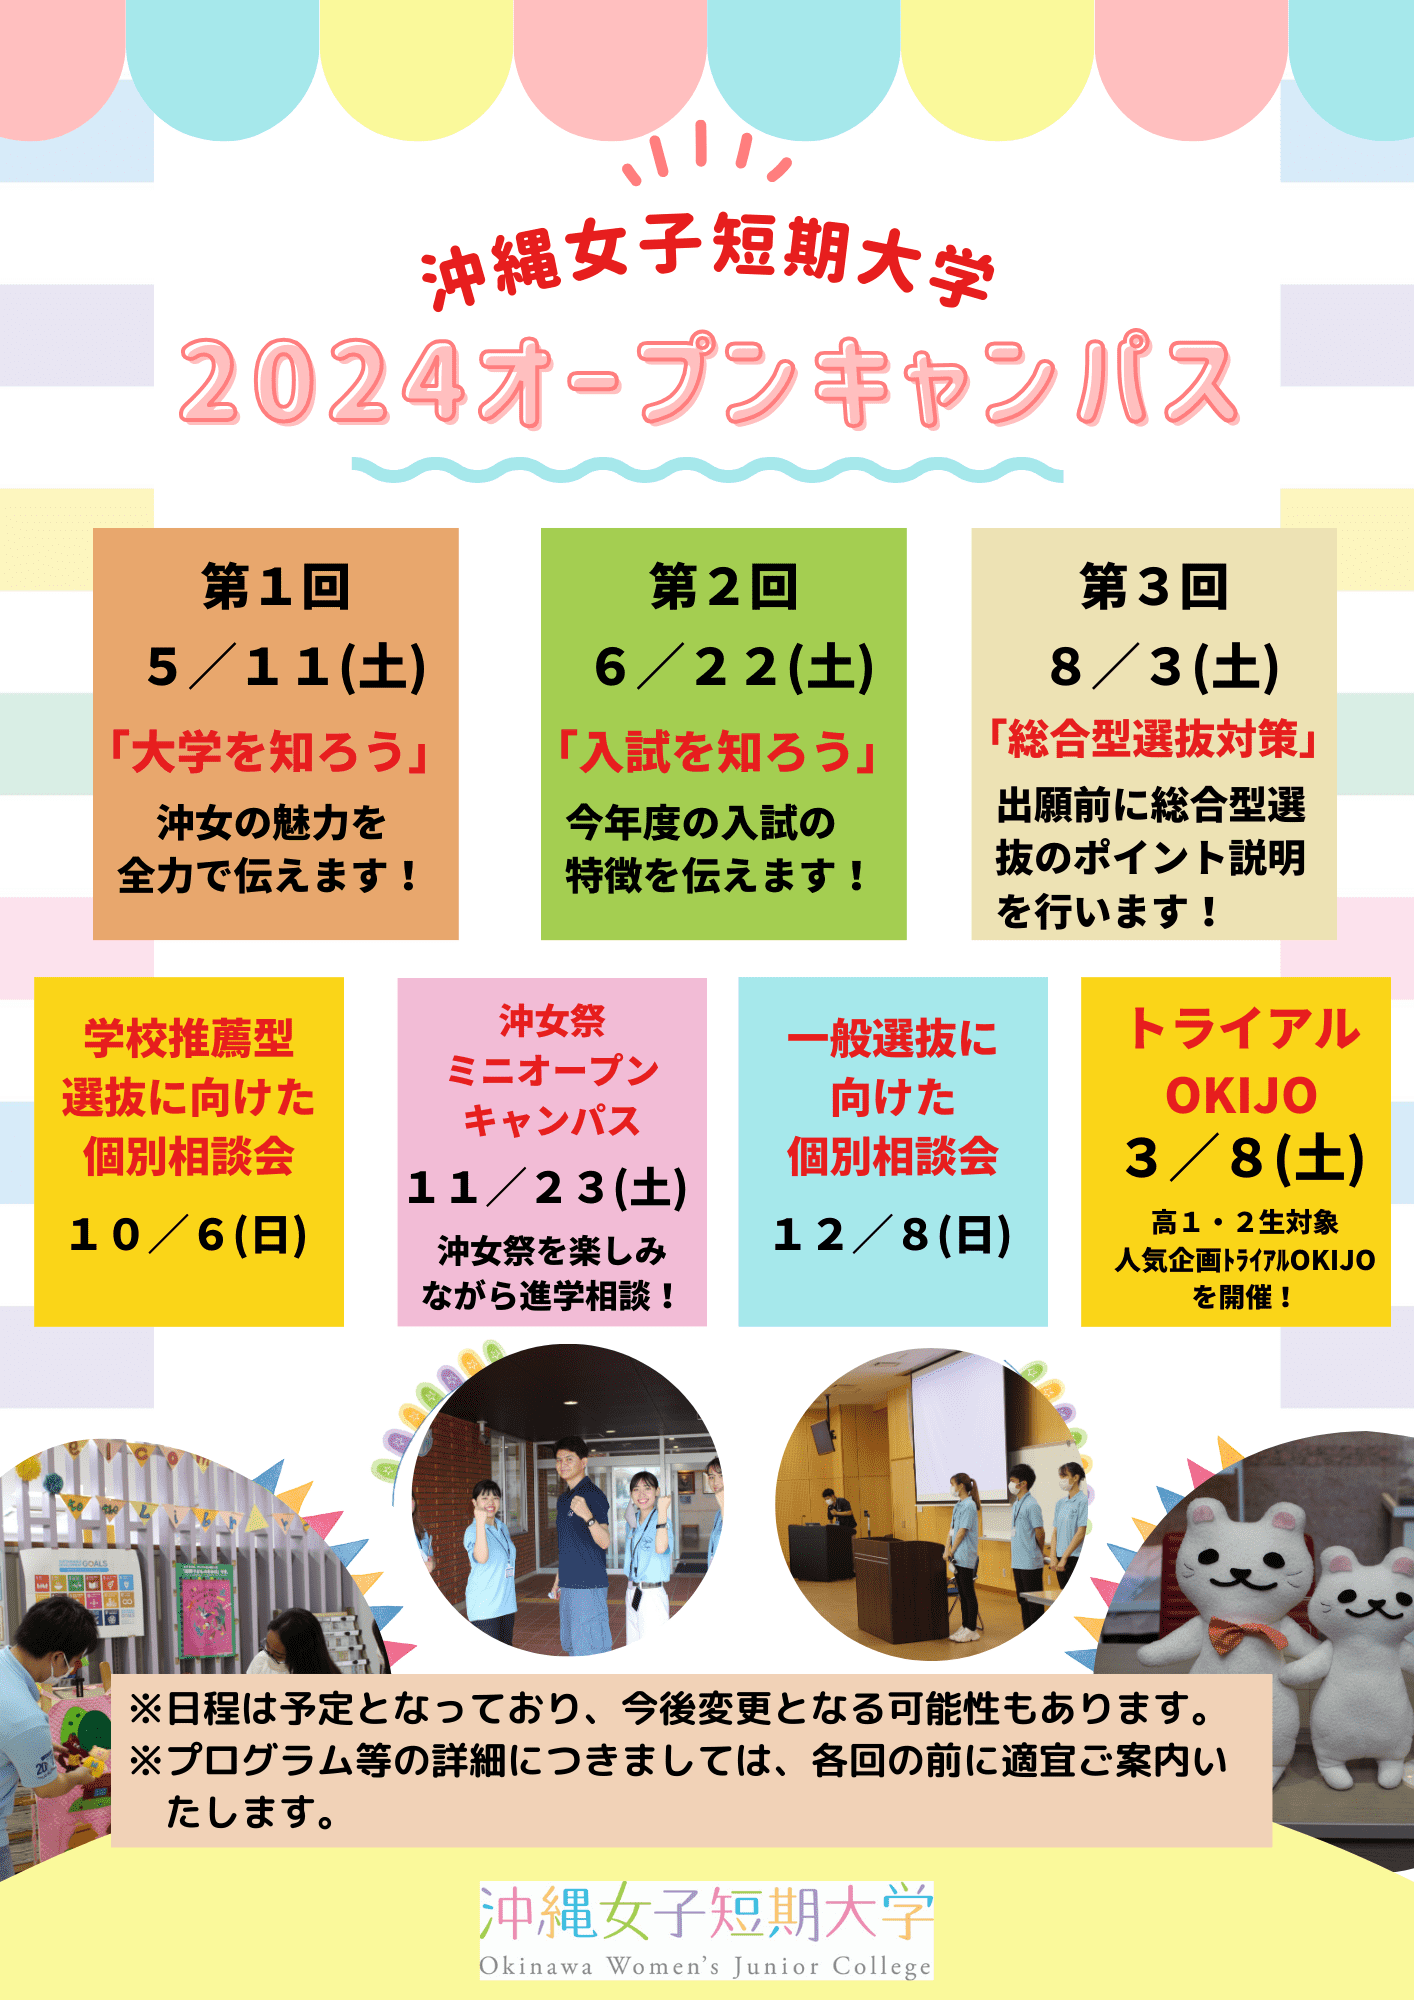 沖縄女子短期大学の2024年度オーキャン開催日程です